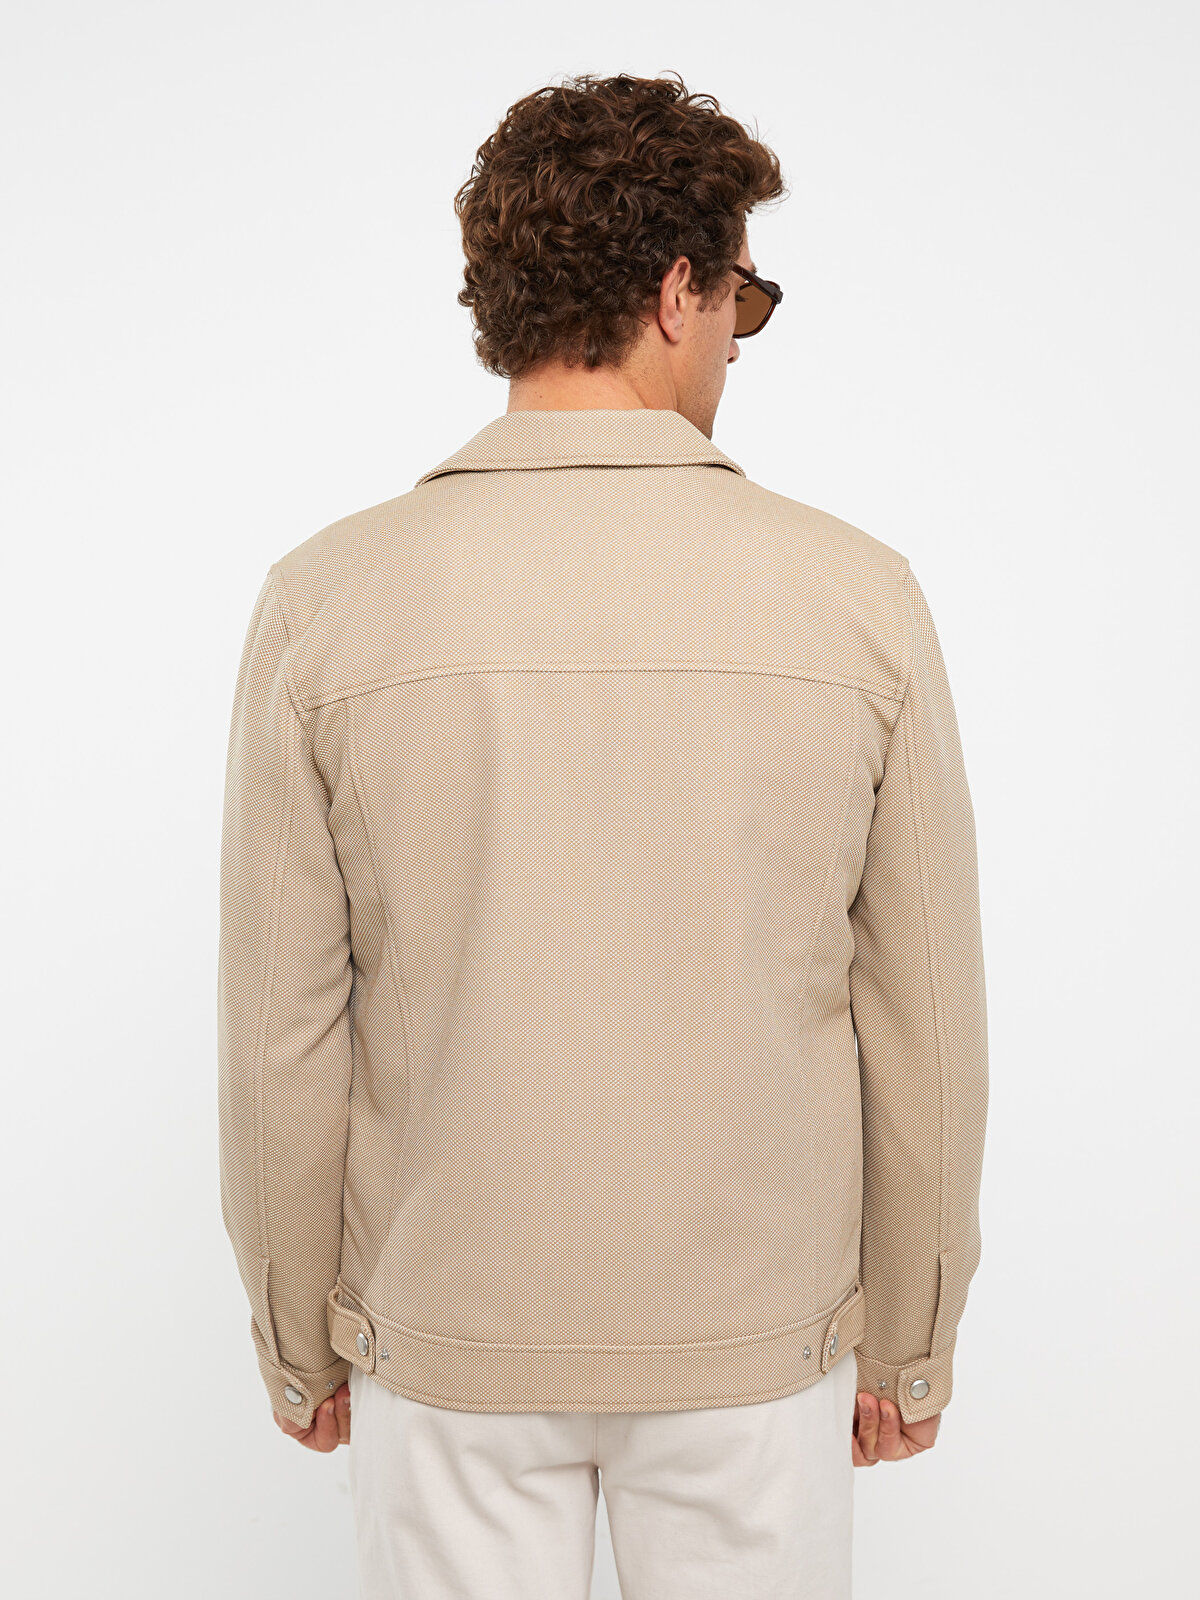 Slim Fit Shirt Collar Men's Coat -S30601Z8-KVB - S30601Z8-KVB - LC Waikiki